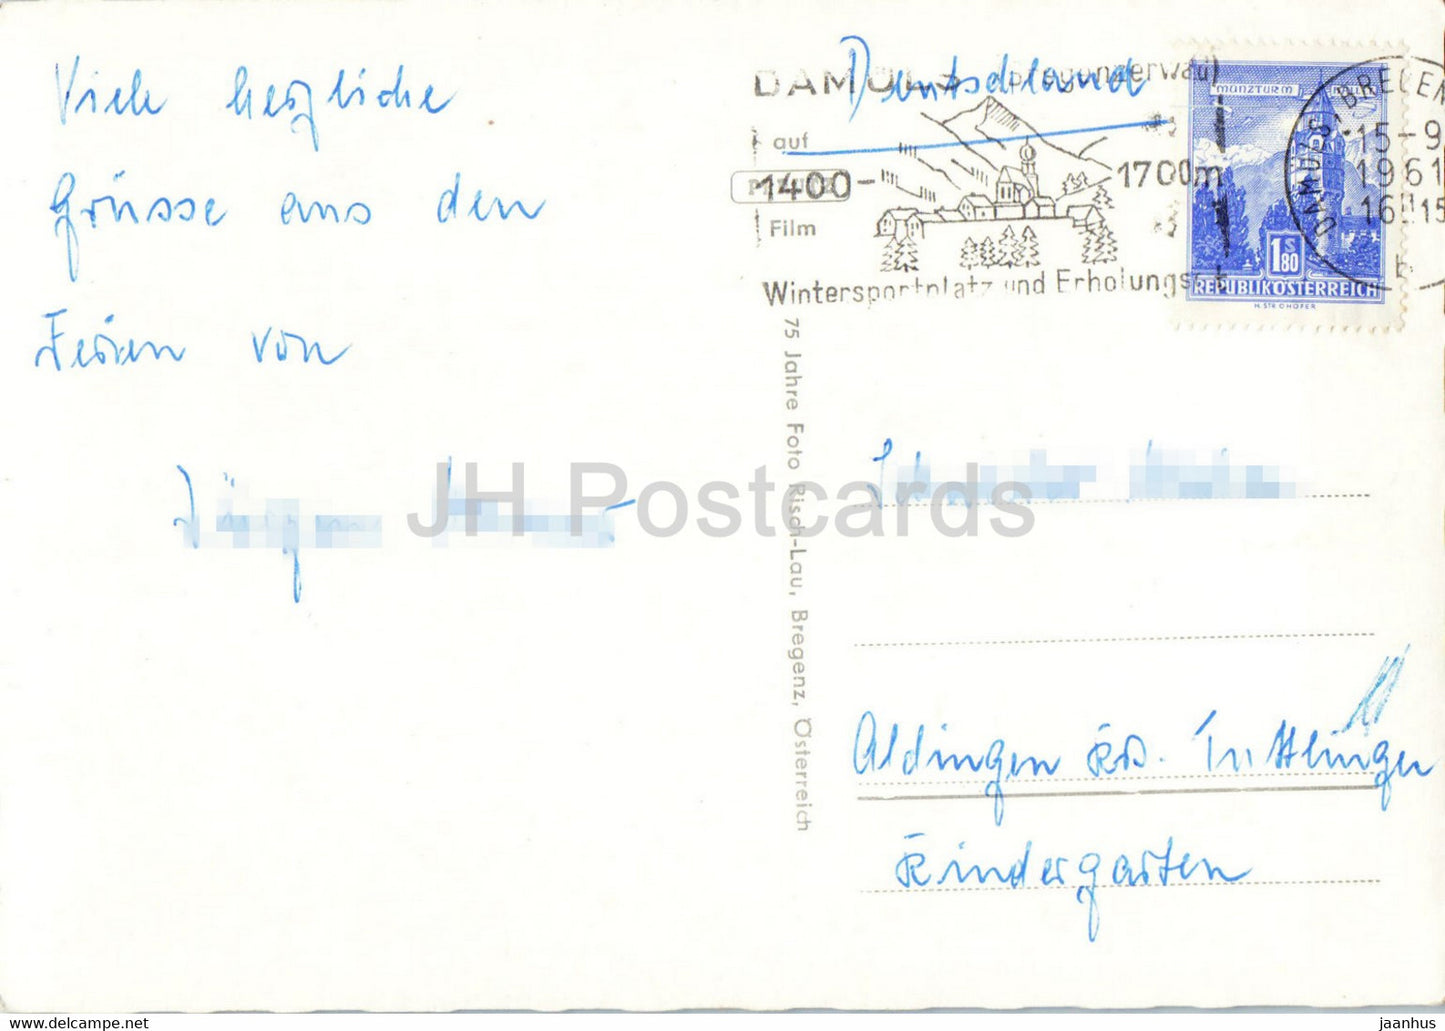 Damüls i Bregenzerwald - Vorarlberg - alte Postkarte - 1961 - Österreich - gebraucht